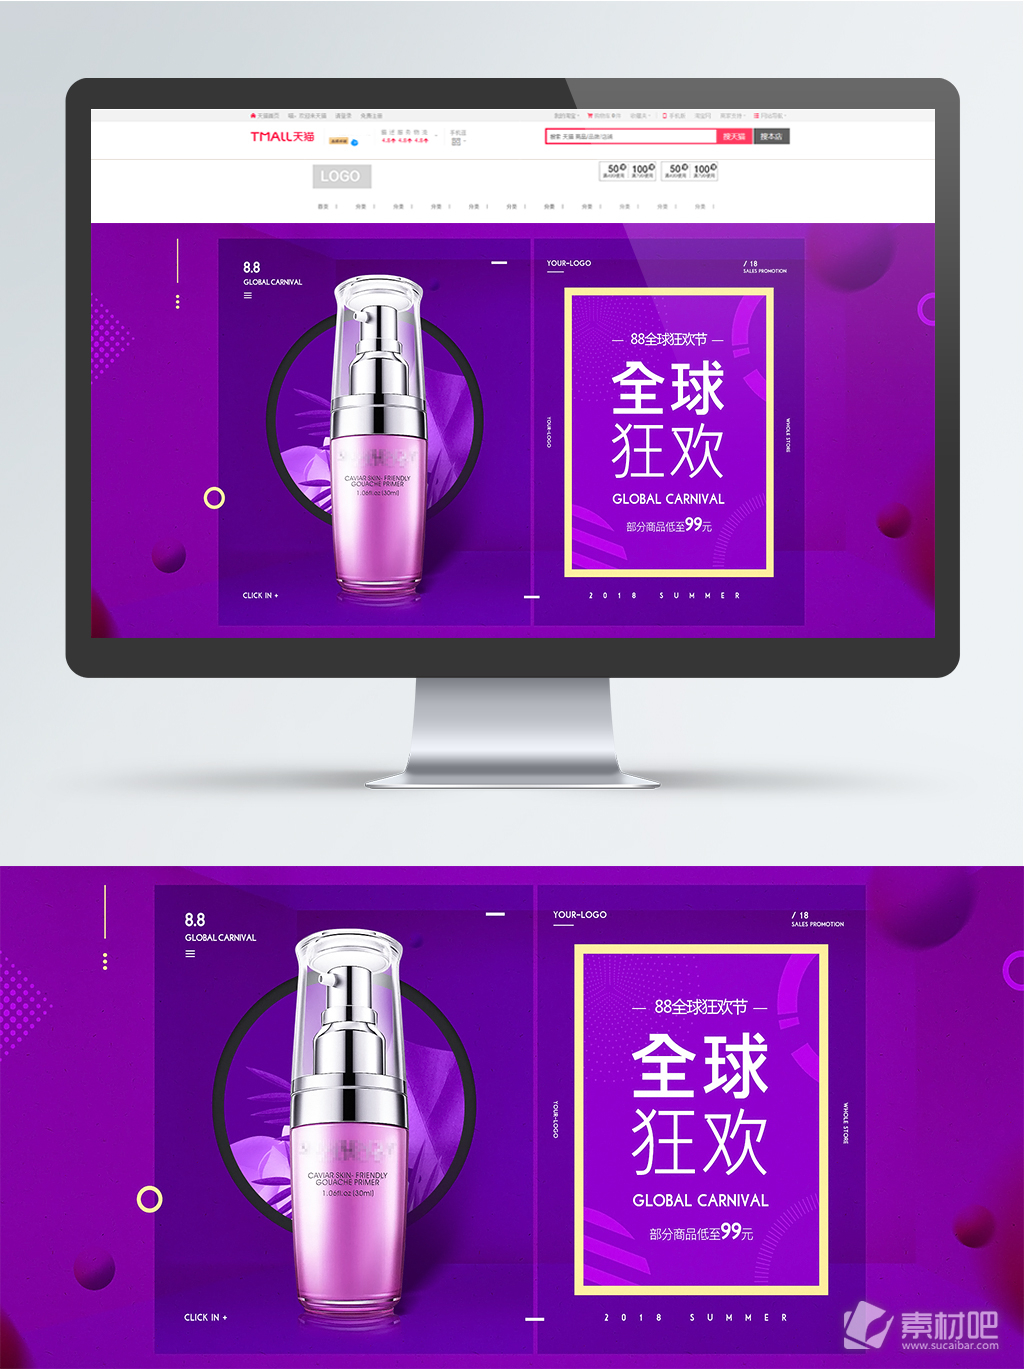 88全球狂欢节时尚大气紫色光化妆品海报